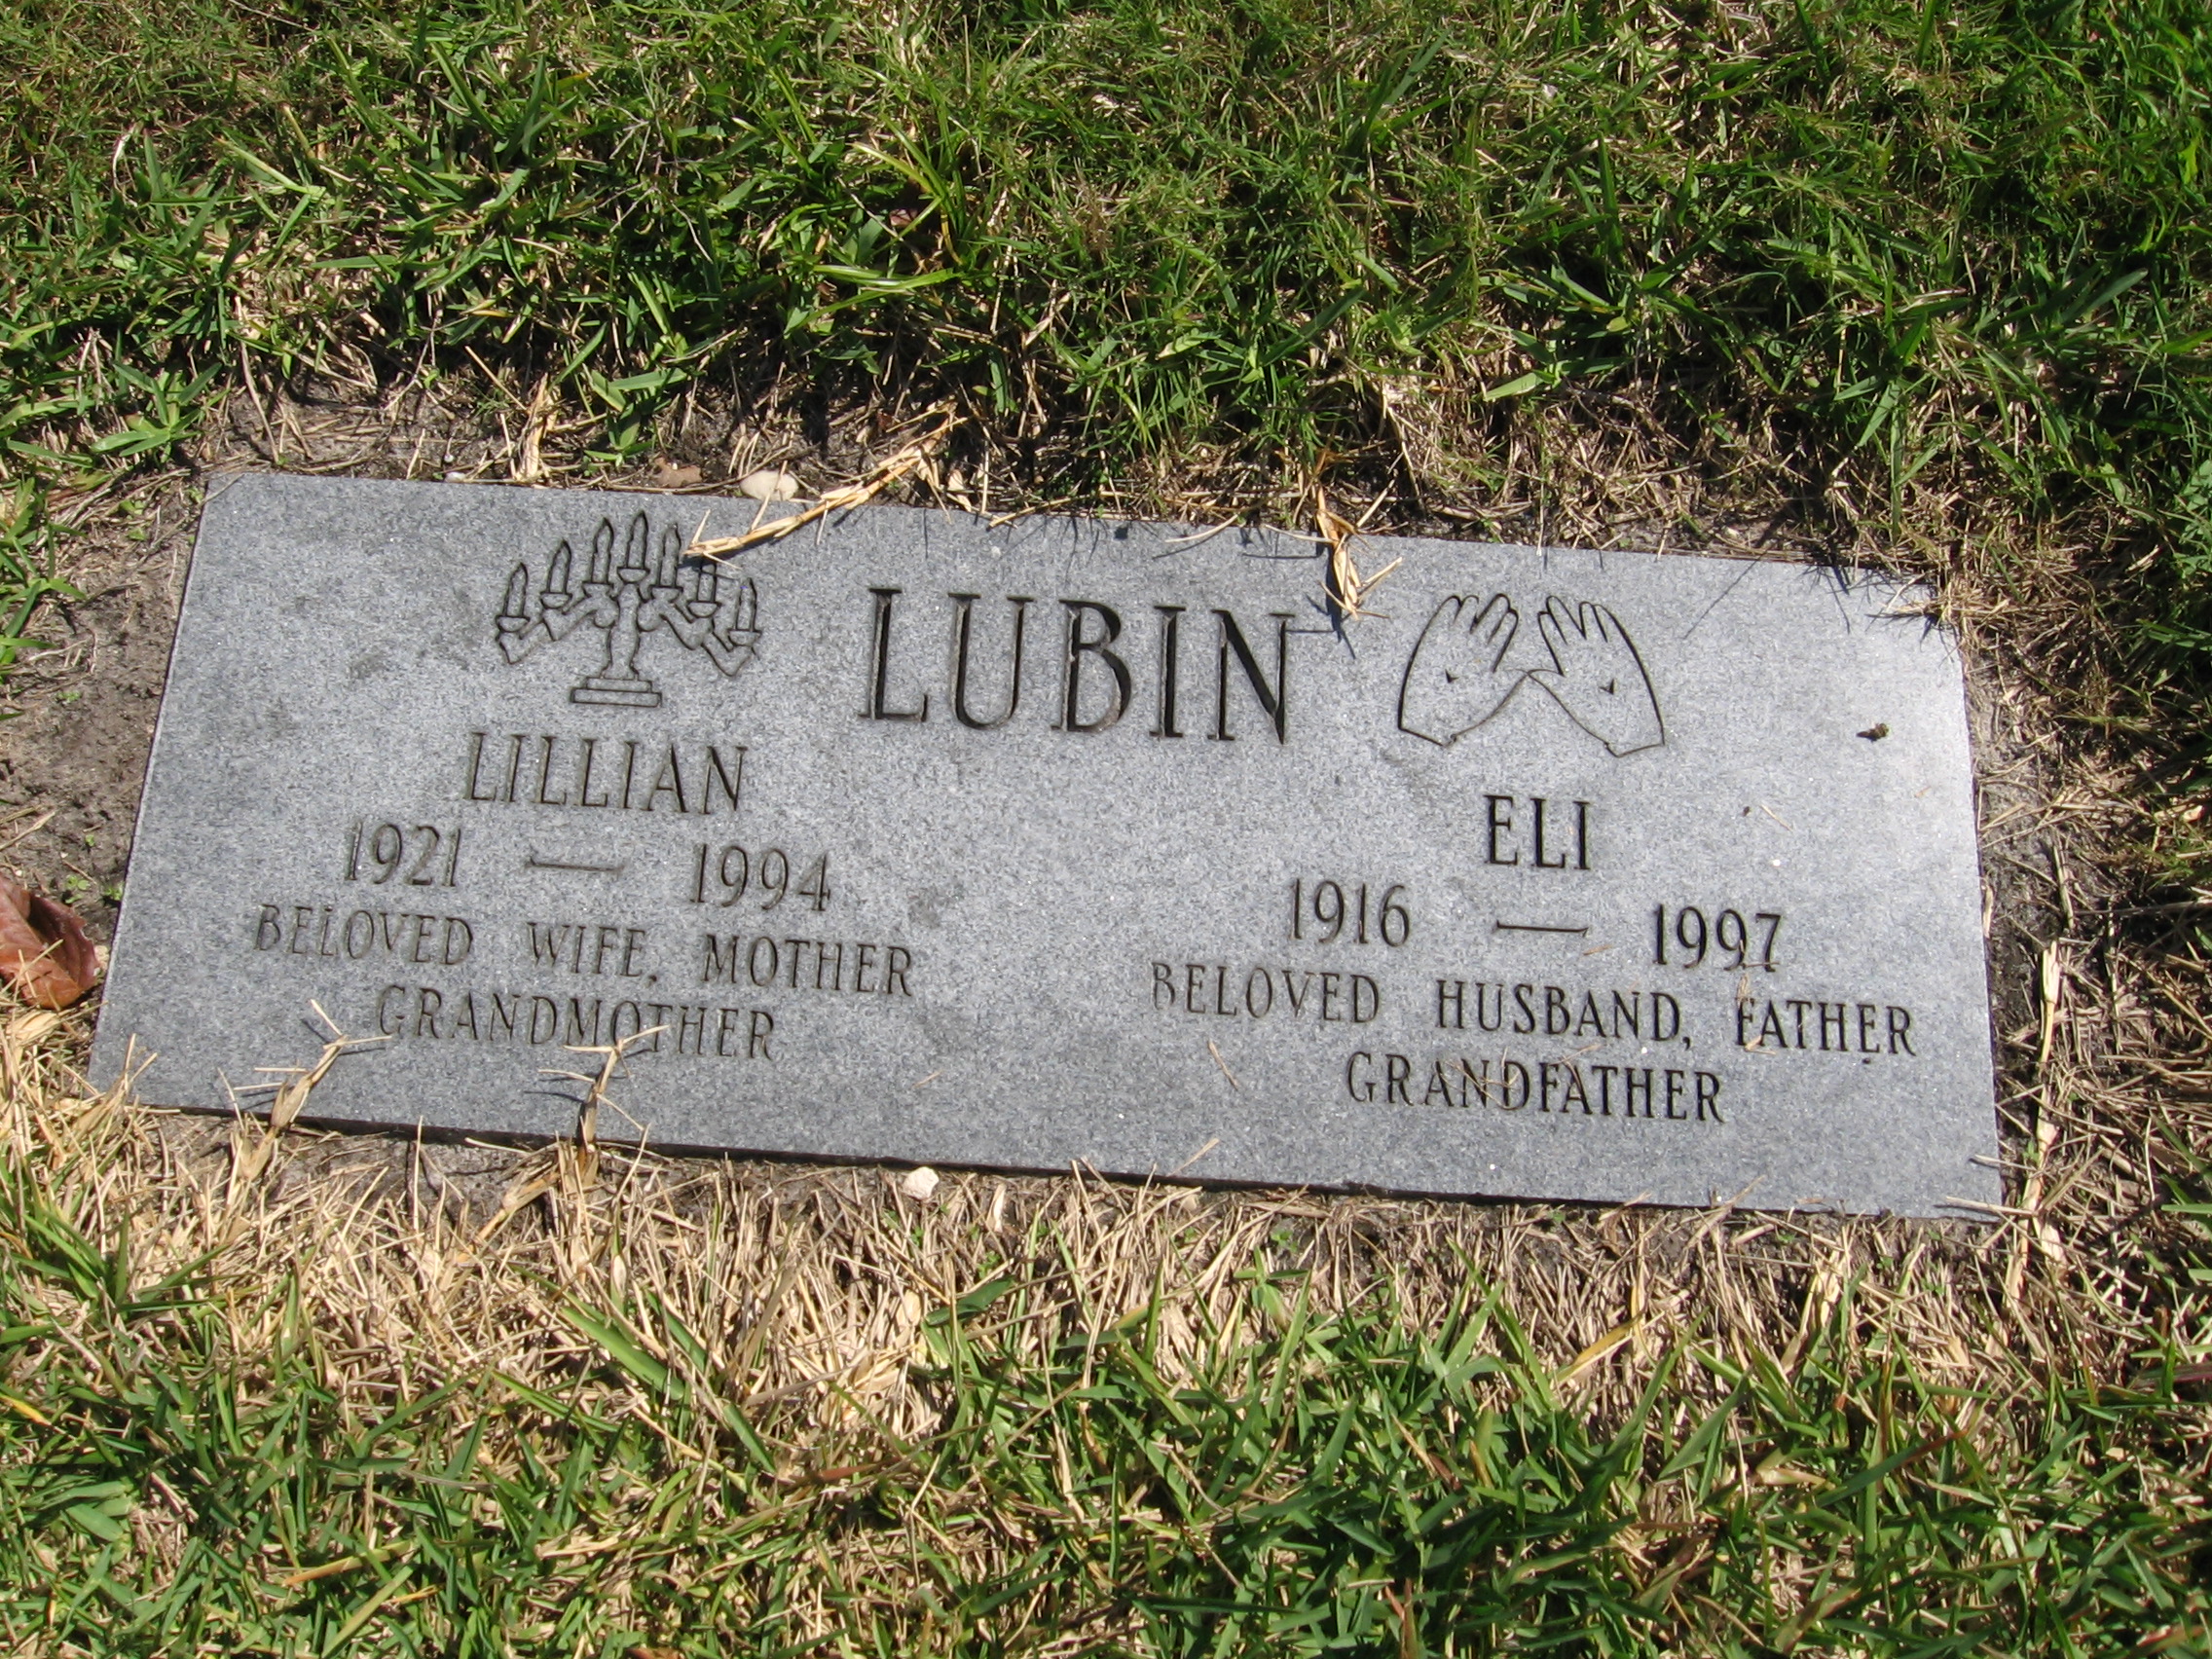 Eli Lubin